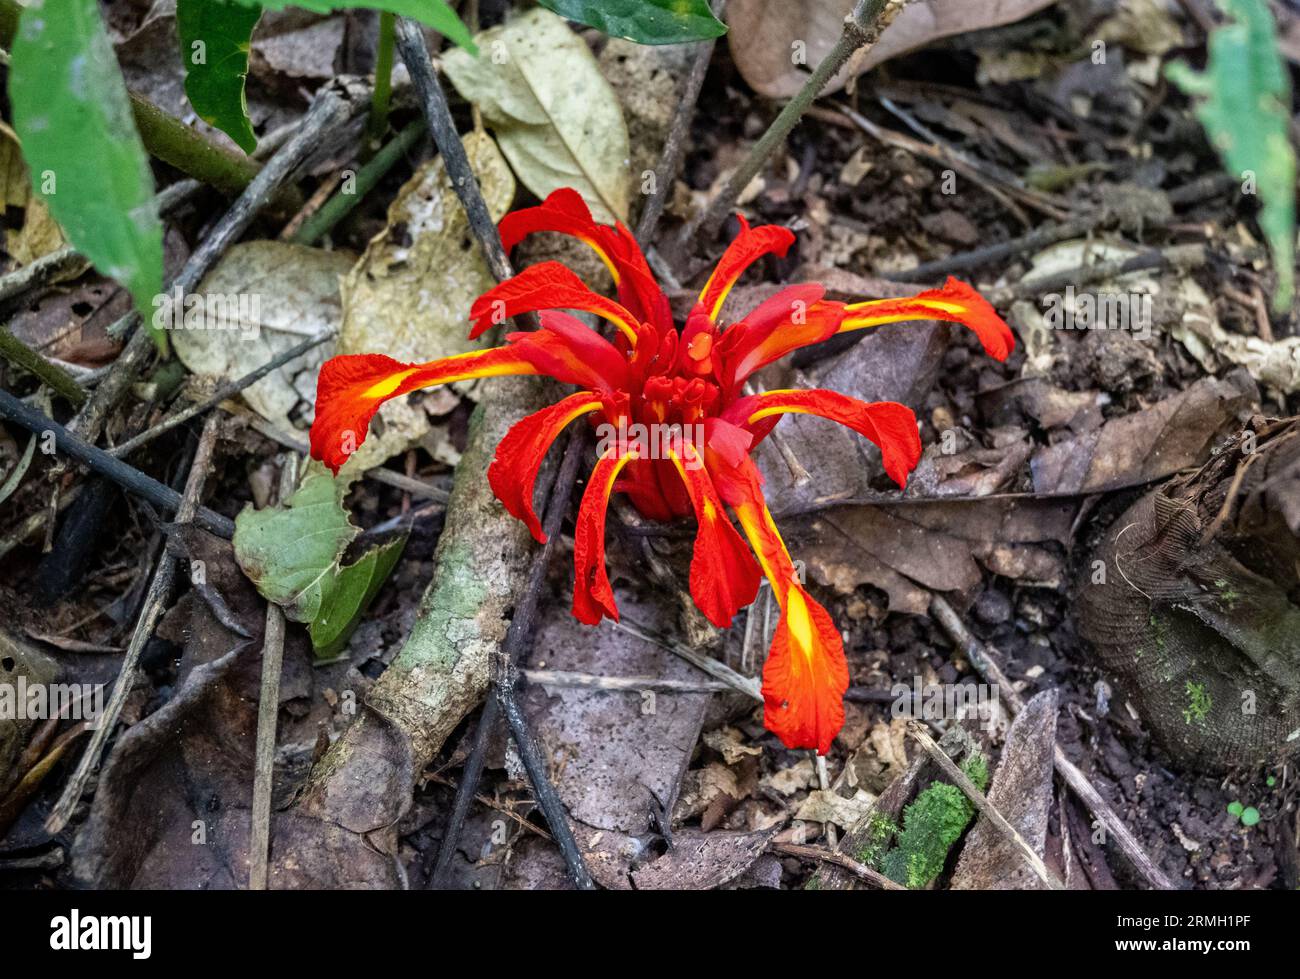 Bunte Blume von Etlingera coccinea, einer Pflanze aus der Ingwerfamilie. Java, Indonesien. Stockfoto